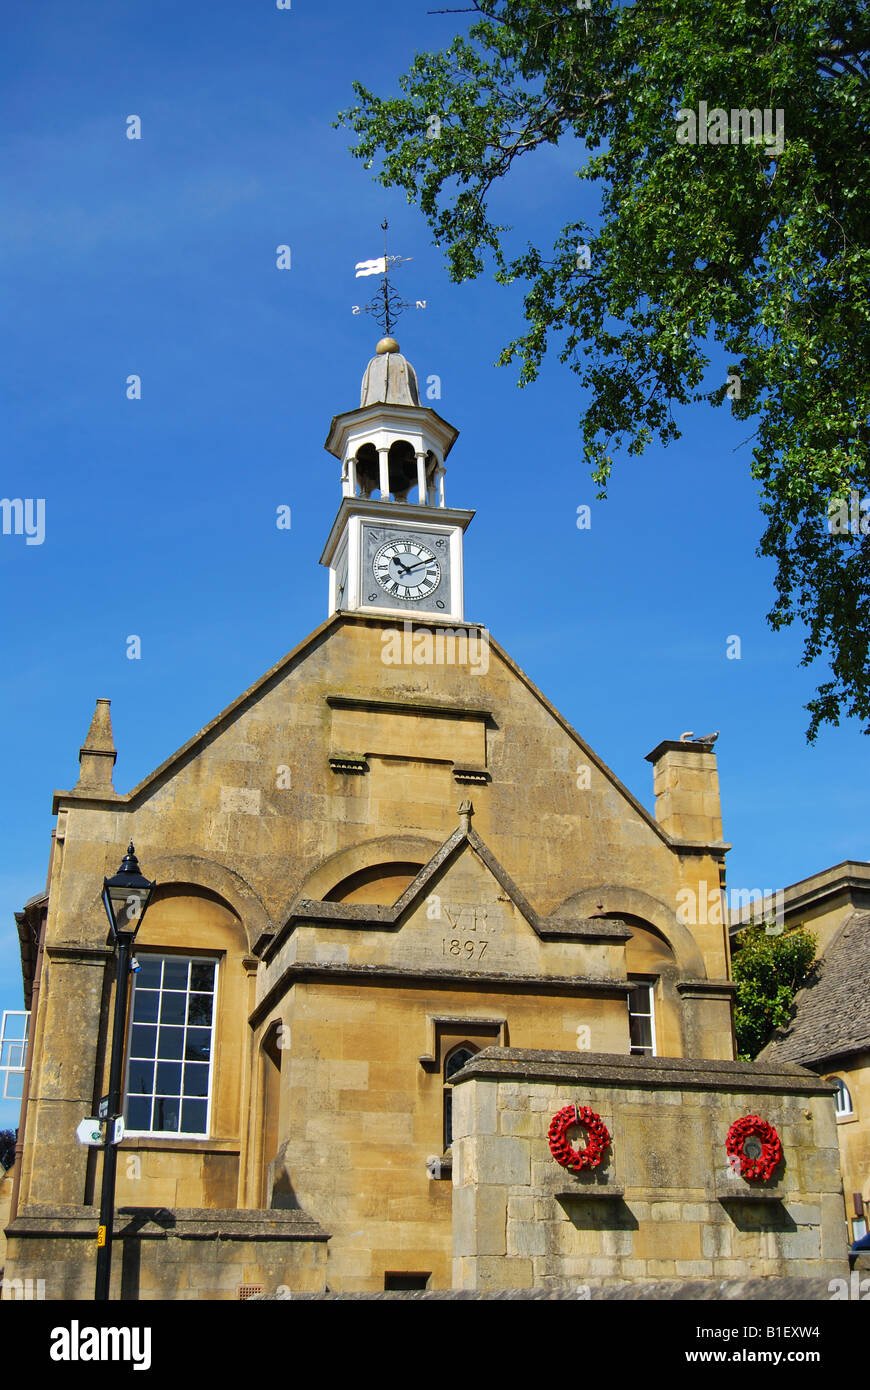 Tour de l'horloge, de la mairie, rue Haute, Chipping Campden, Cotswolds, Gloucestershire, Angleterre, Royaume-Uni Banque D'Images